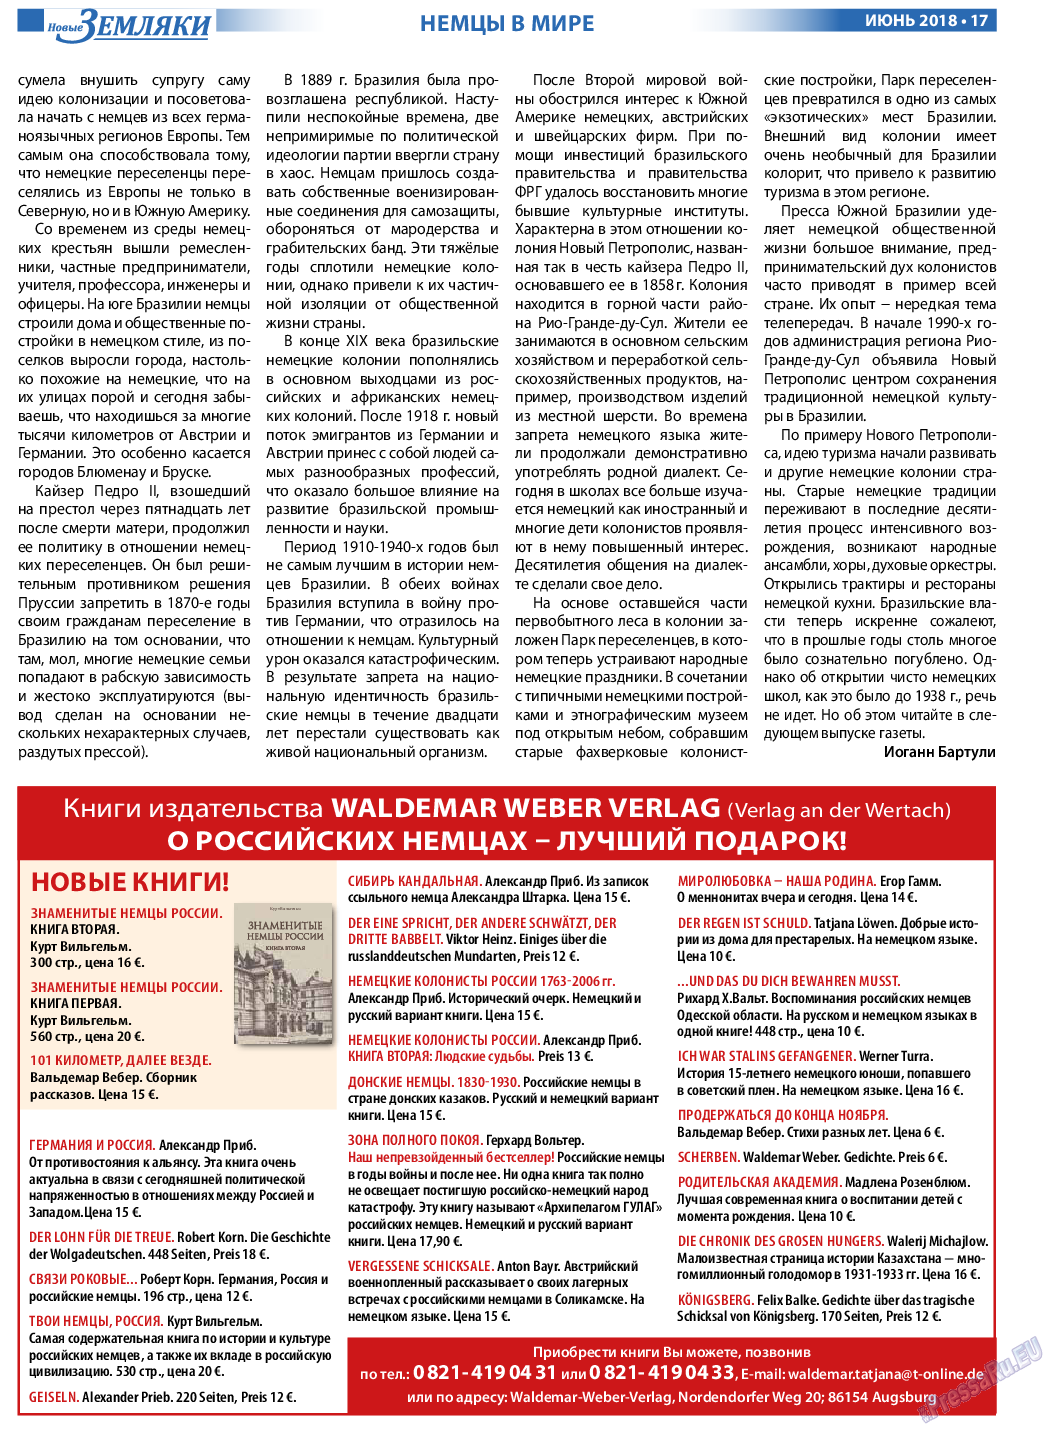 Новые Земляки, газета. 2018 №6 стр.17